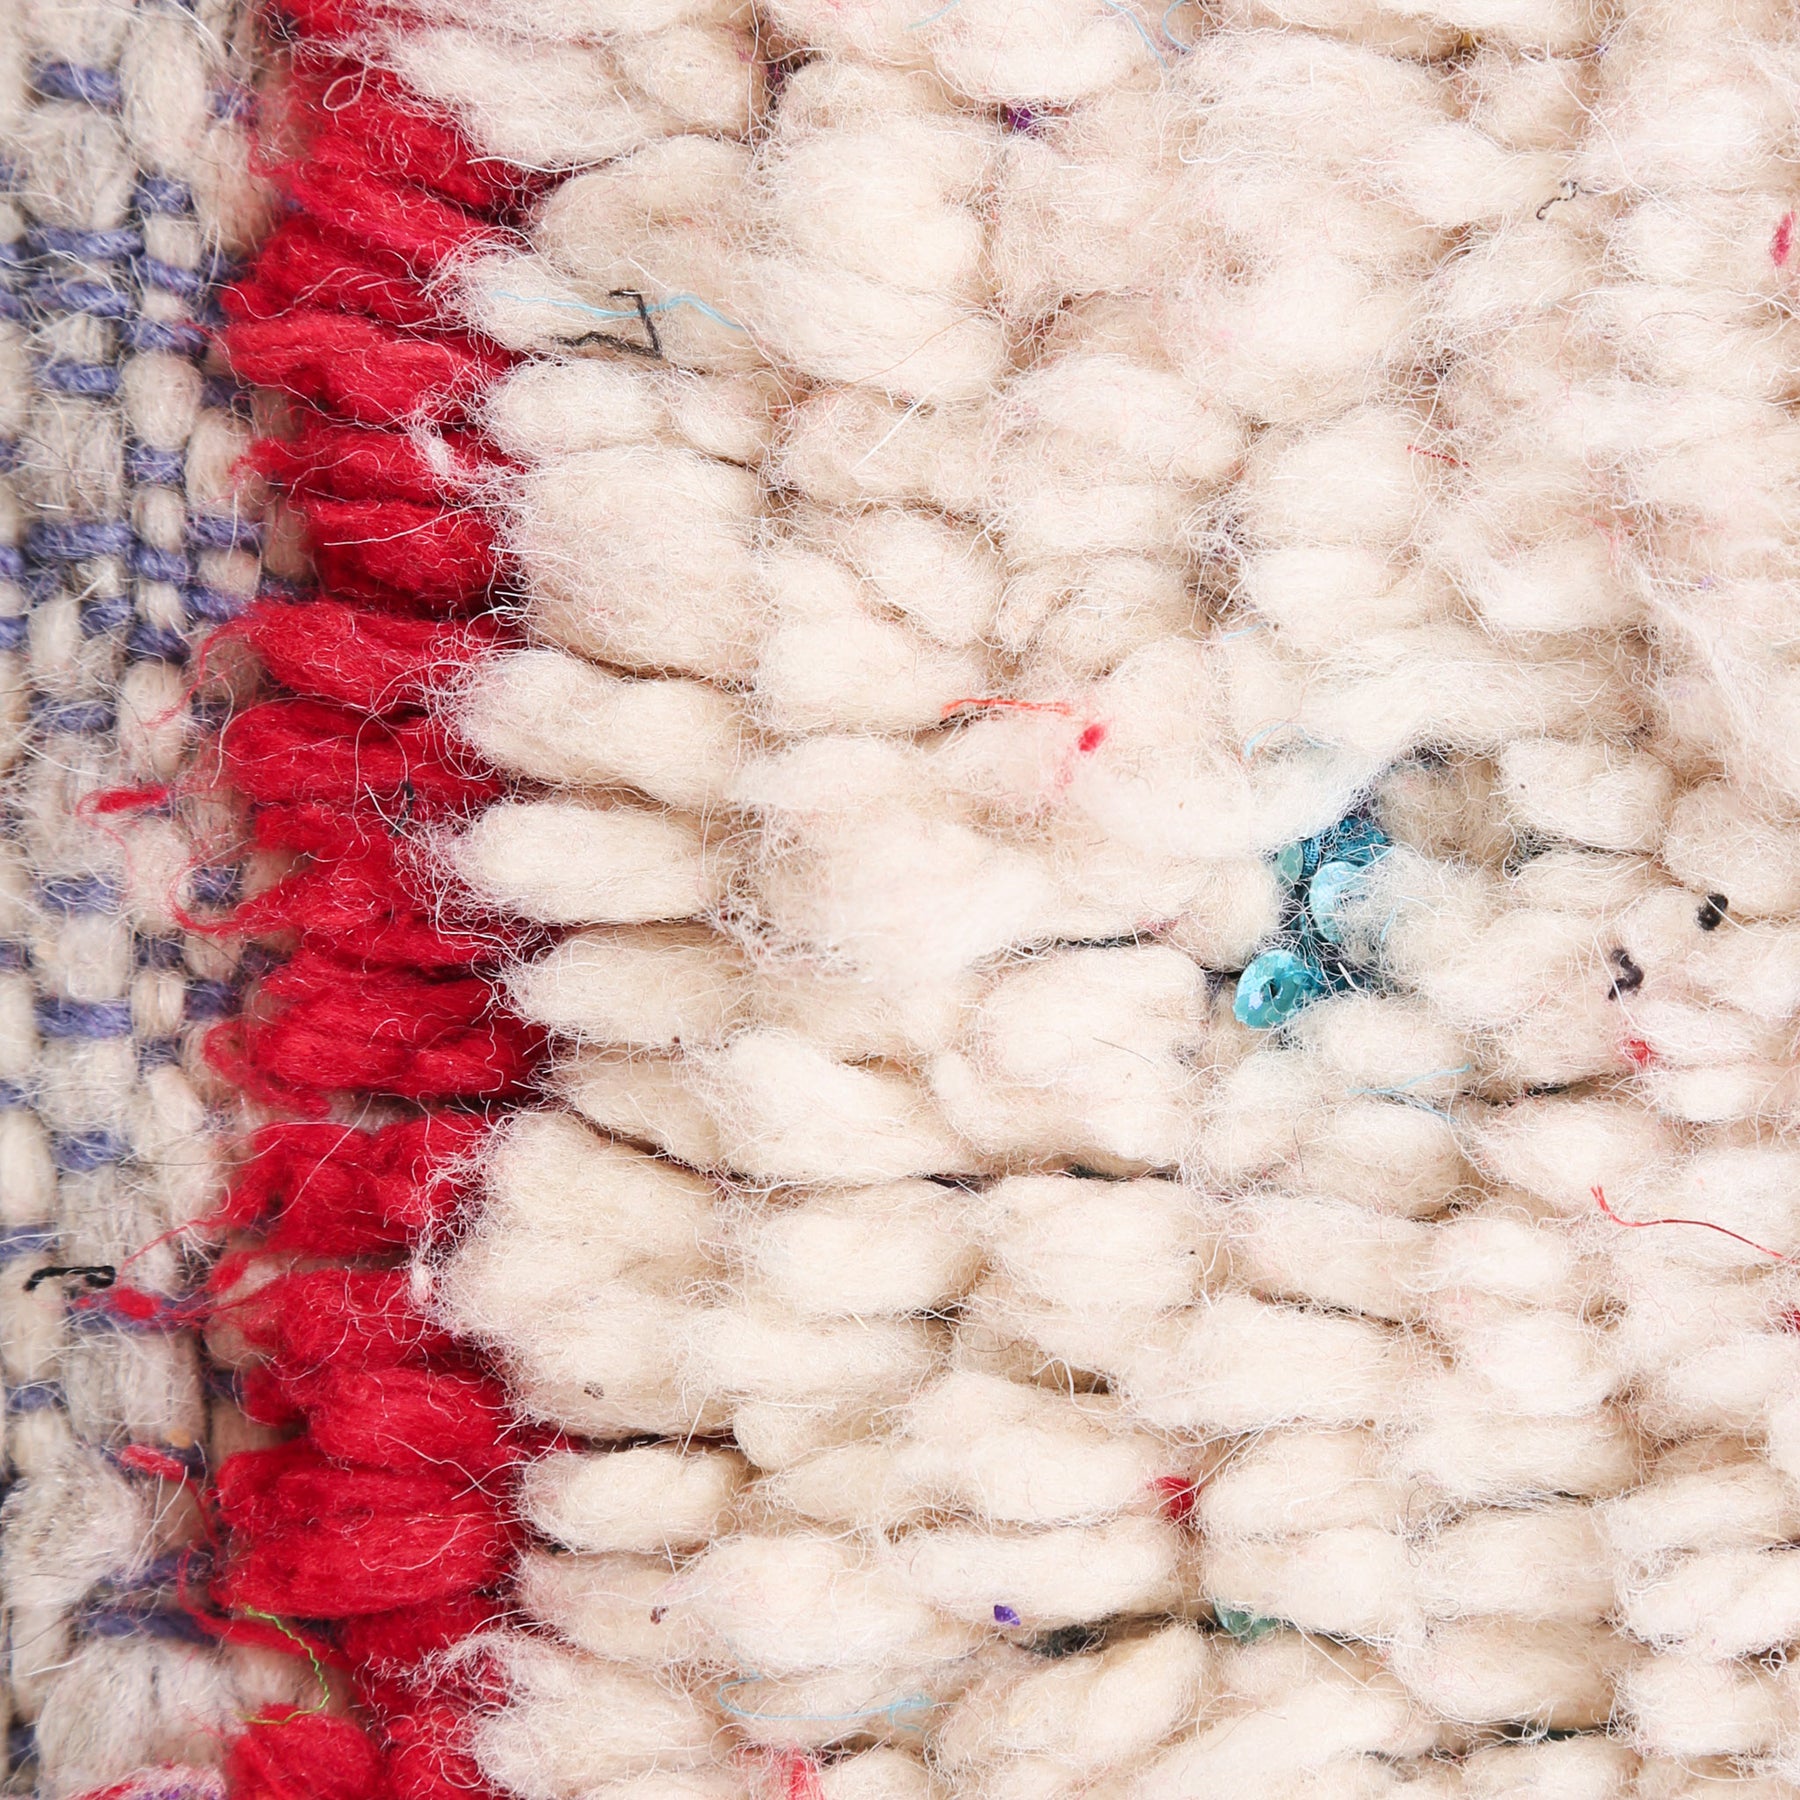 dettaglio dei nodi di lana avorio e rossa con delle paiette azzurre che spuntano